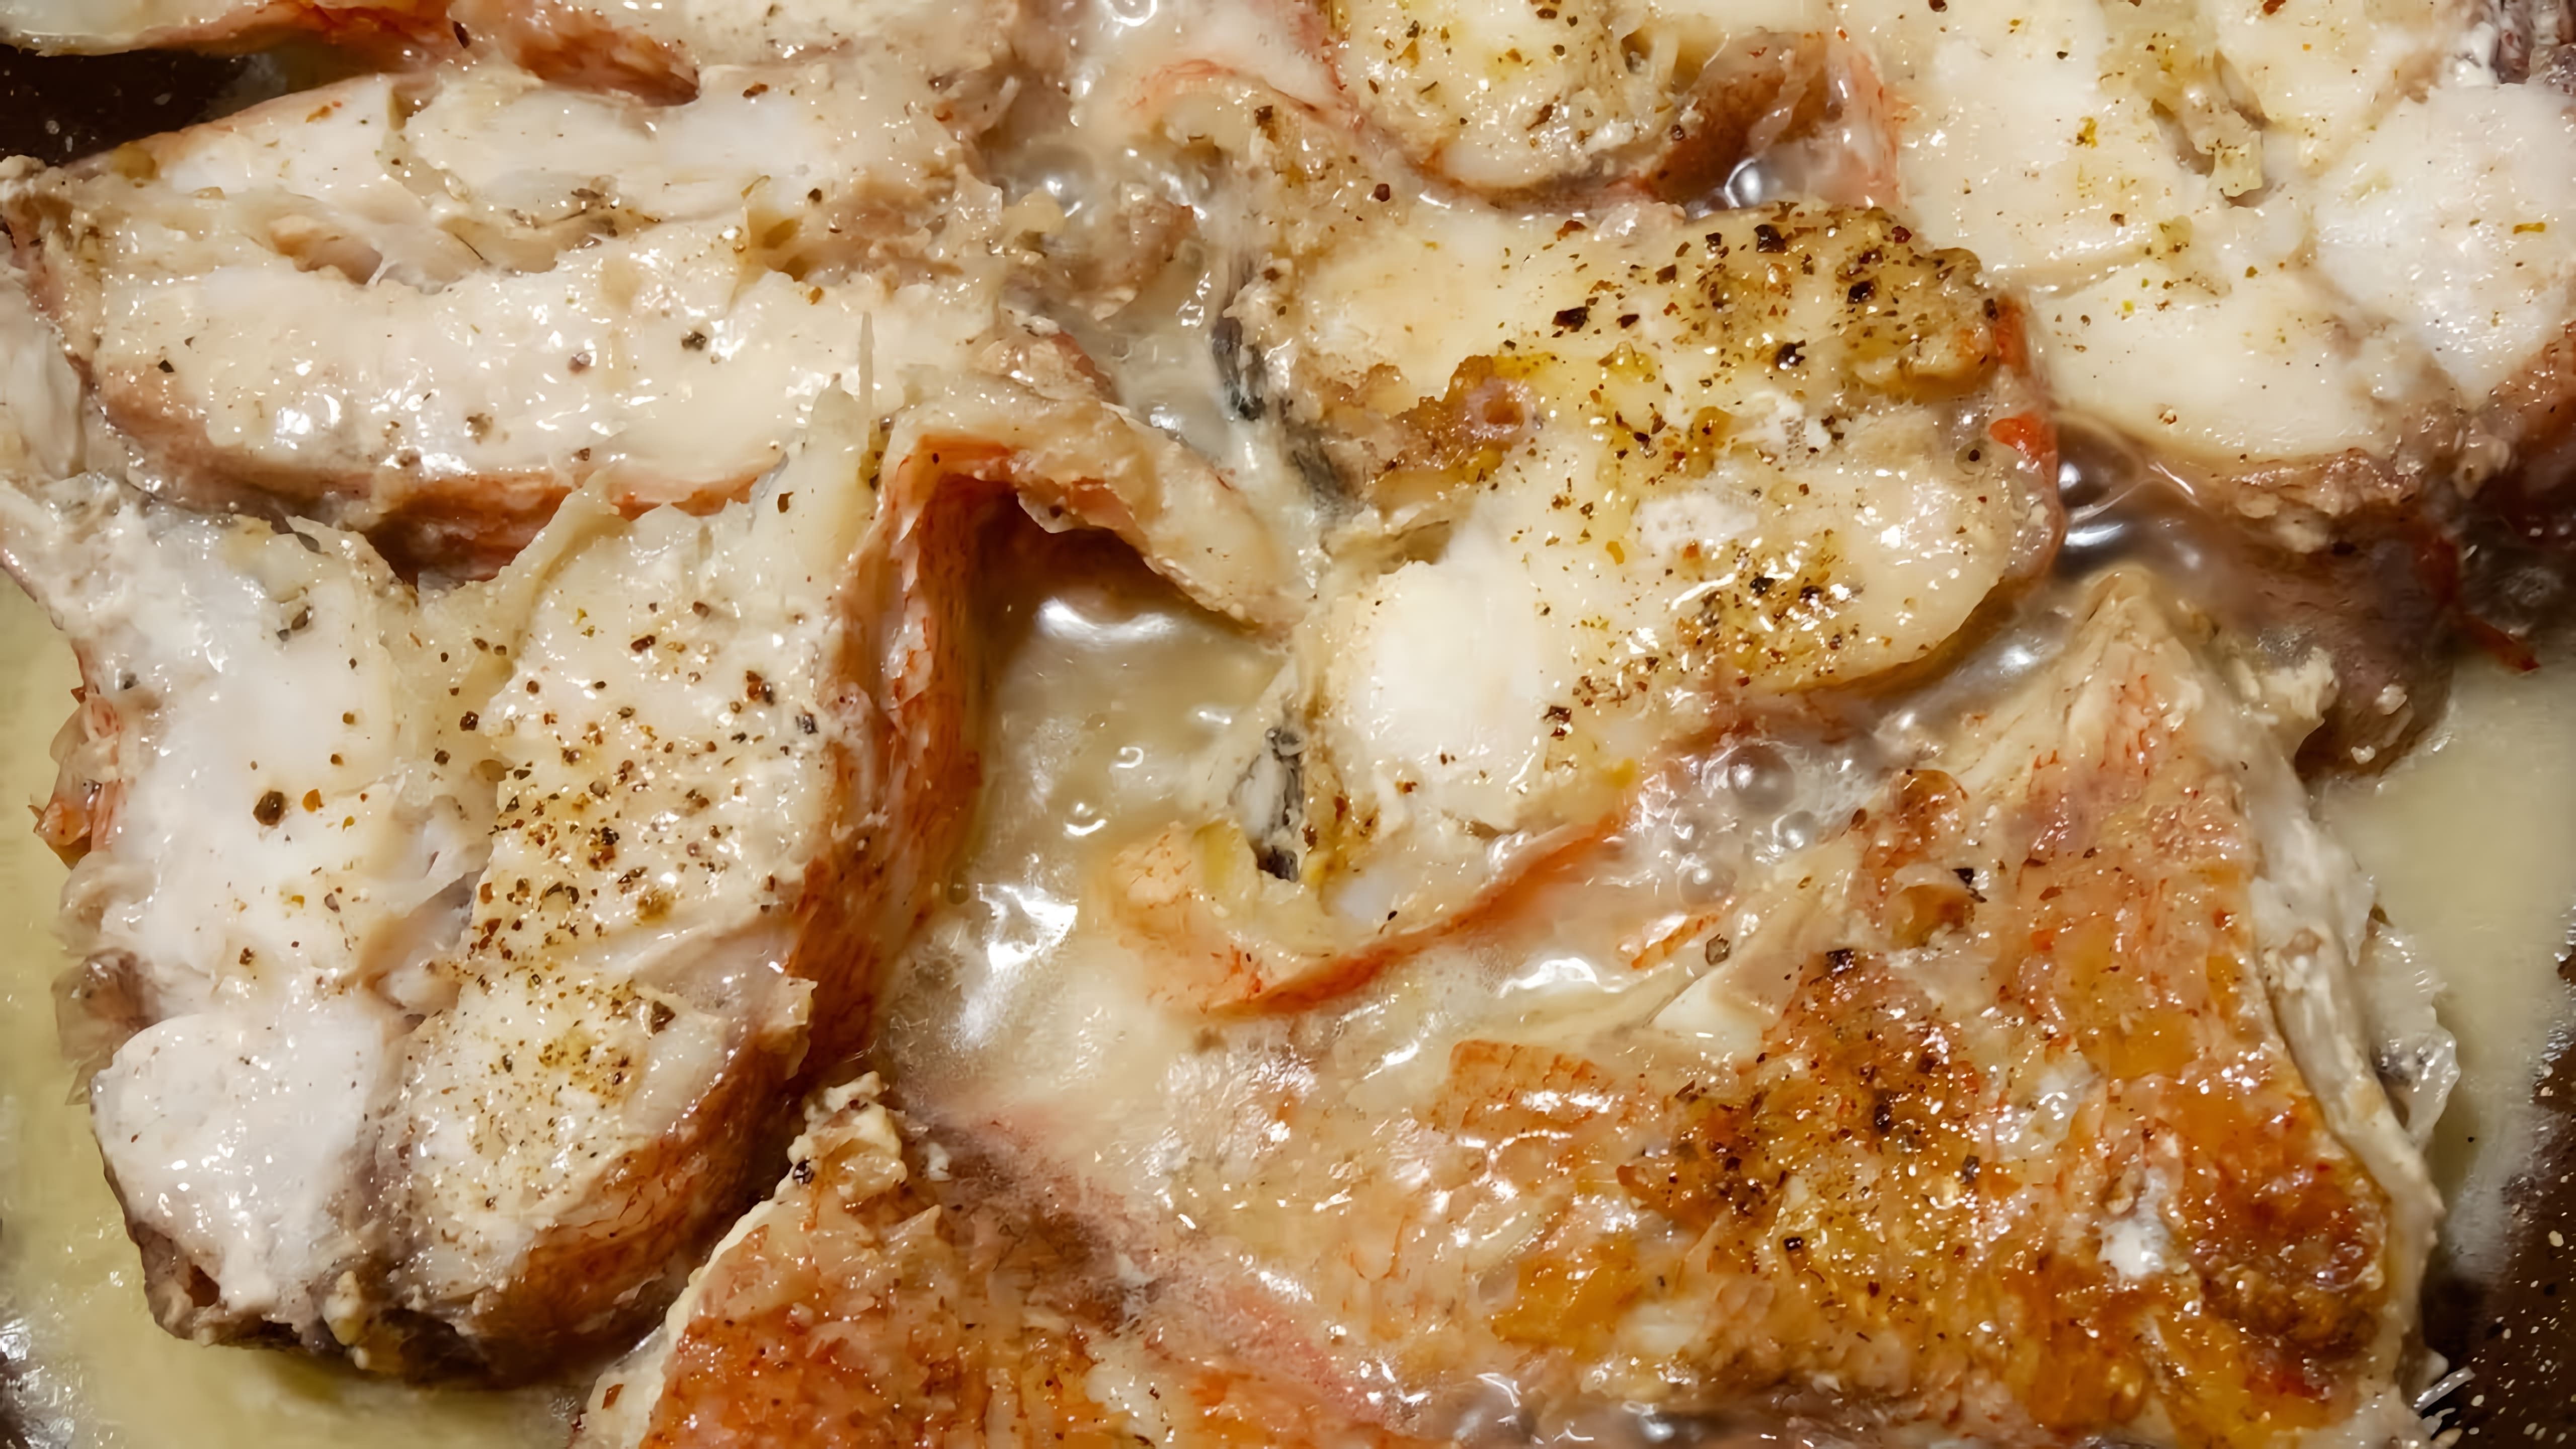 В этом видео демонстрируется процесс приготовления вкусного и диетического обеда из жареного морского окуня с картофельным пюре